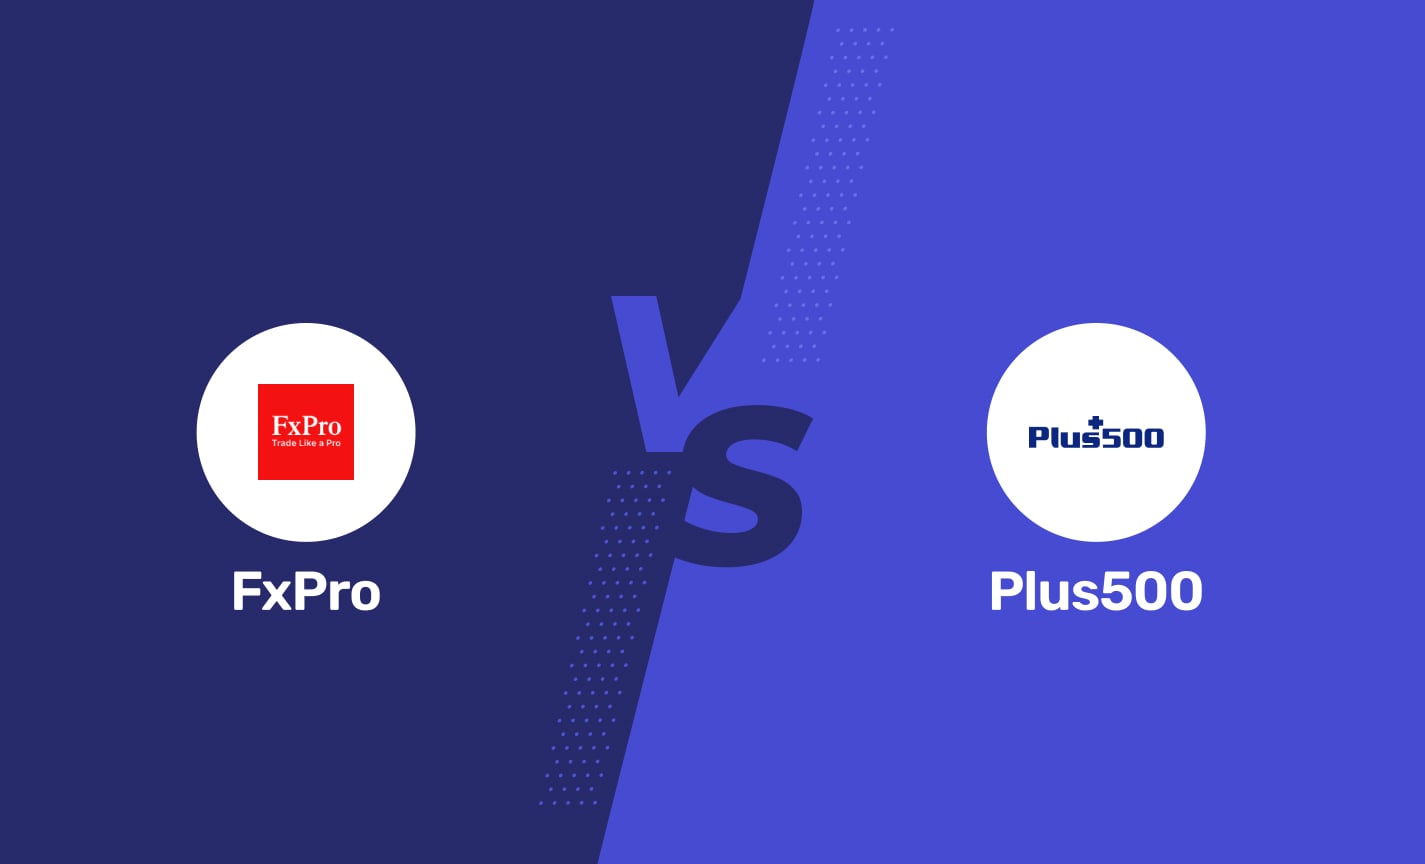 FxPro vs Plus500